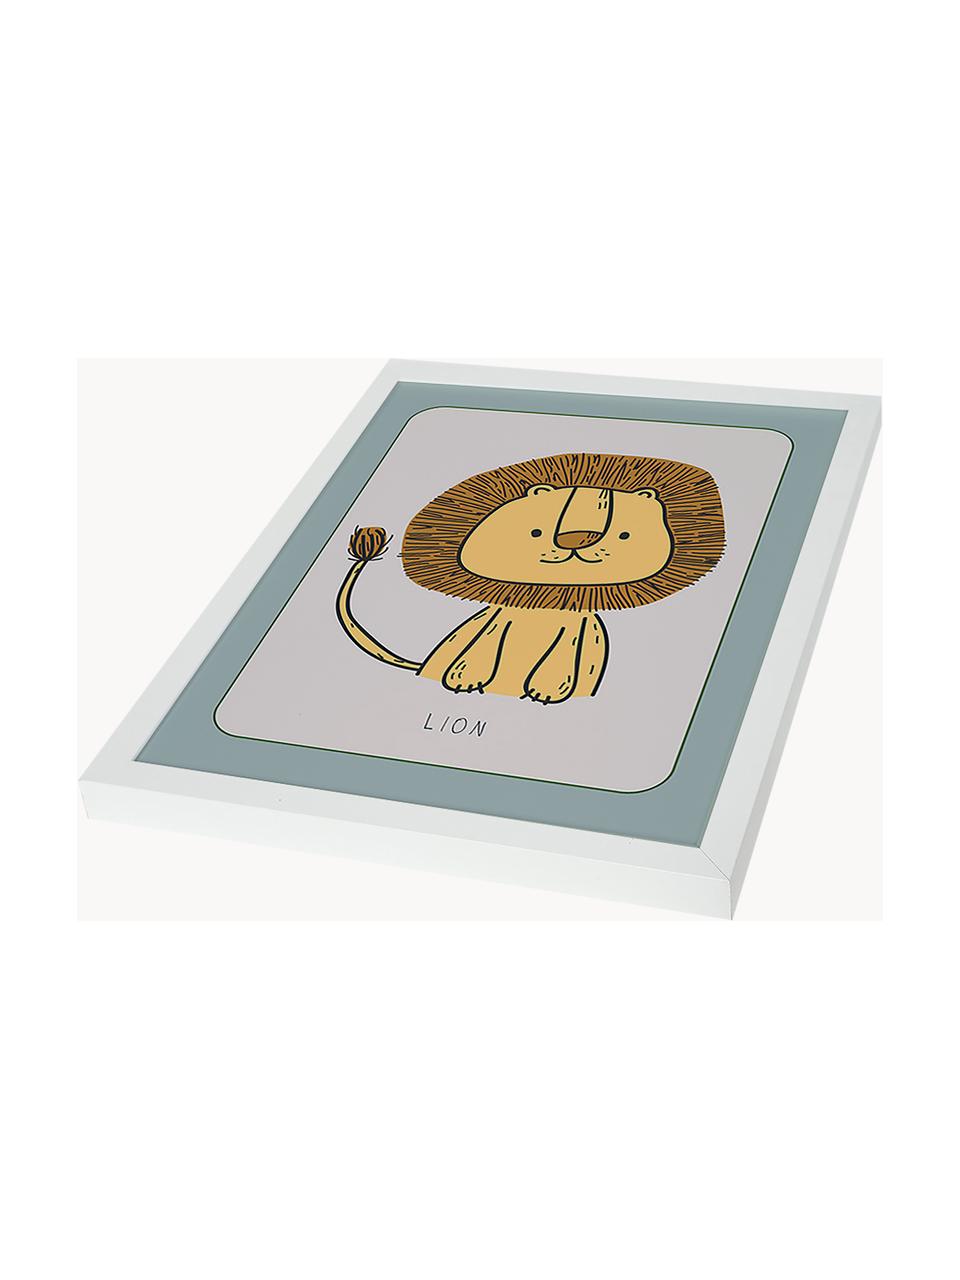 Gerahmter Digitaldruck Lion, Rahmen: Buchenholz, FSC zertifizi, Bild: Digitaldruck auf Papier, , Front: Acrylglas, Weiß, Senfgelb, Salbeigrün, B 33 x H 43 cm